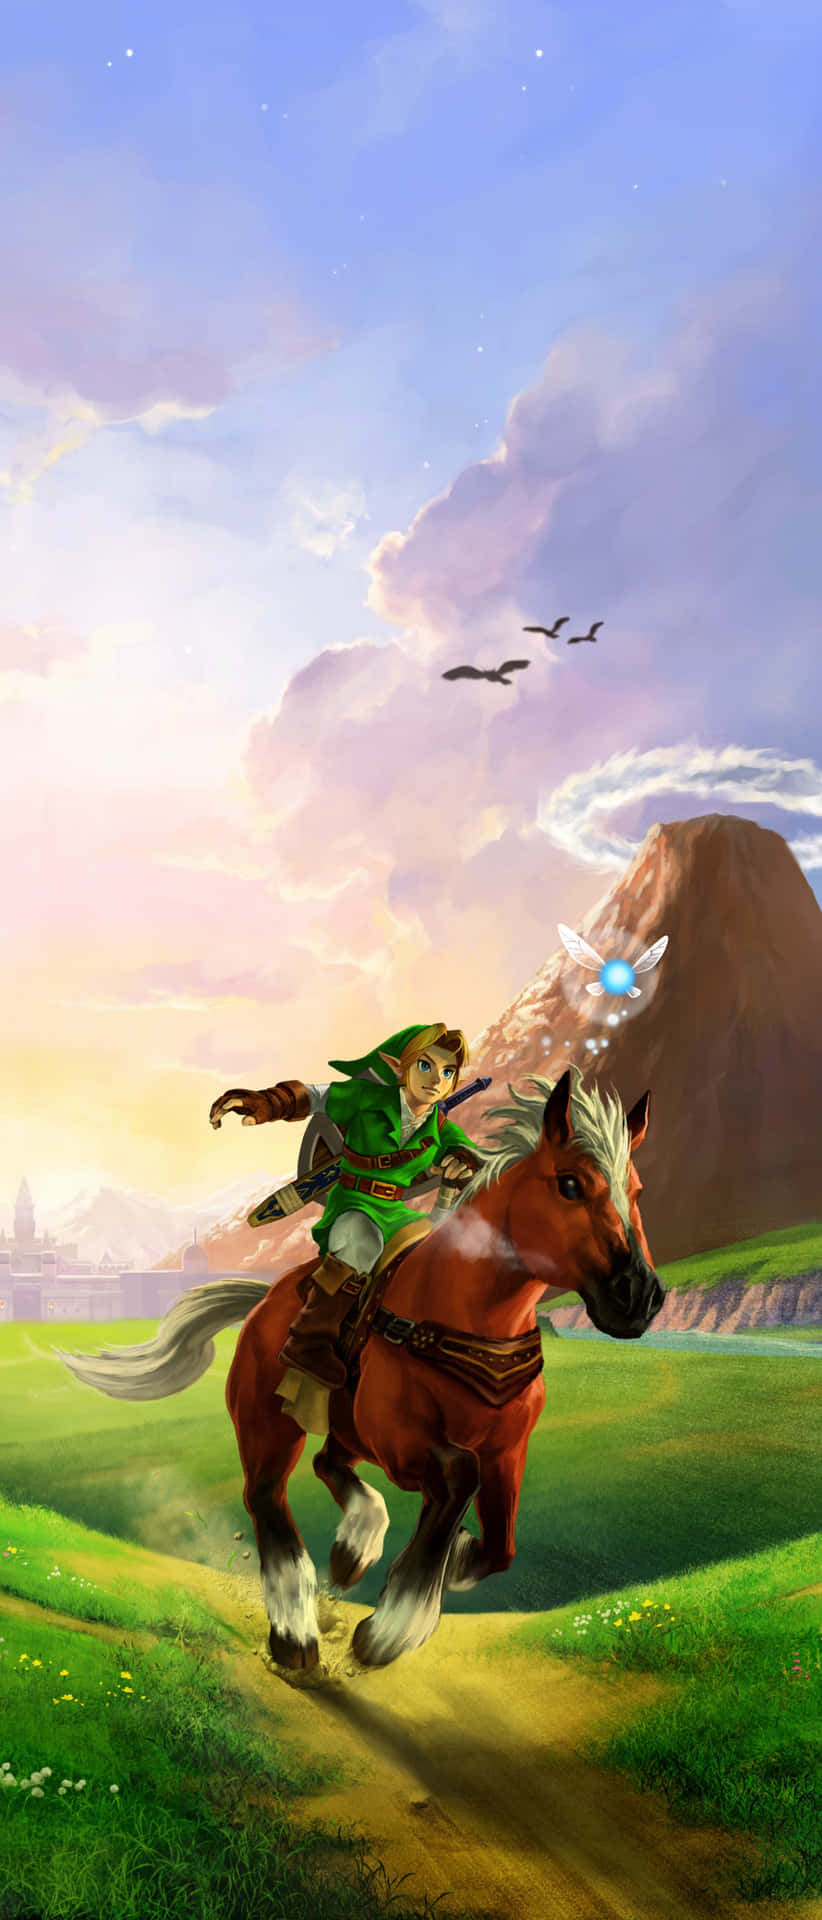 Erforschedie Geheimnisse Von The Legend Of Zelda Mit Dem Neuen Zelda-handy! Wallpaper